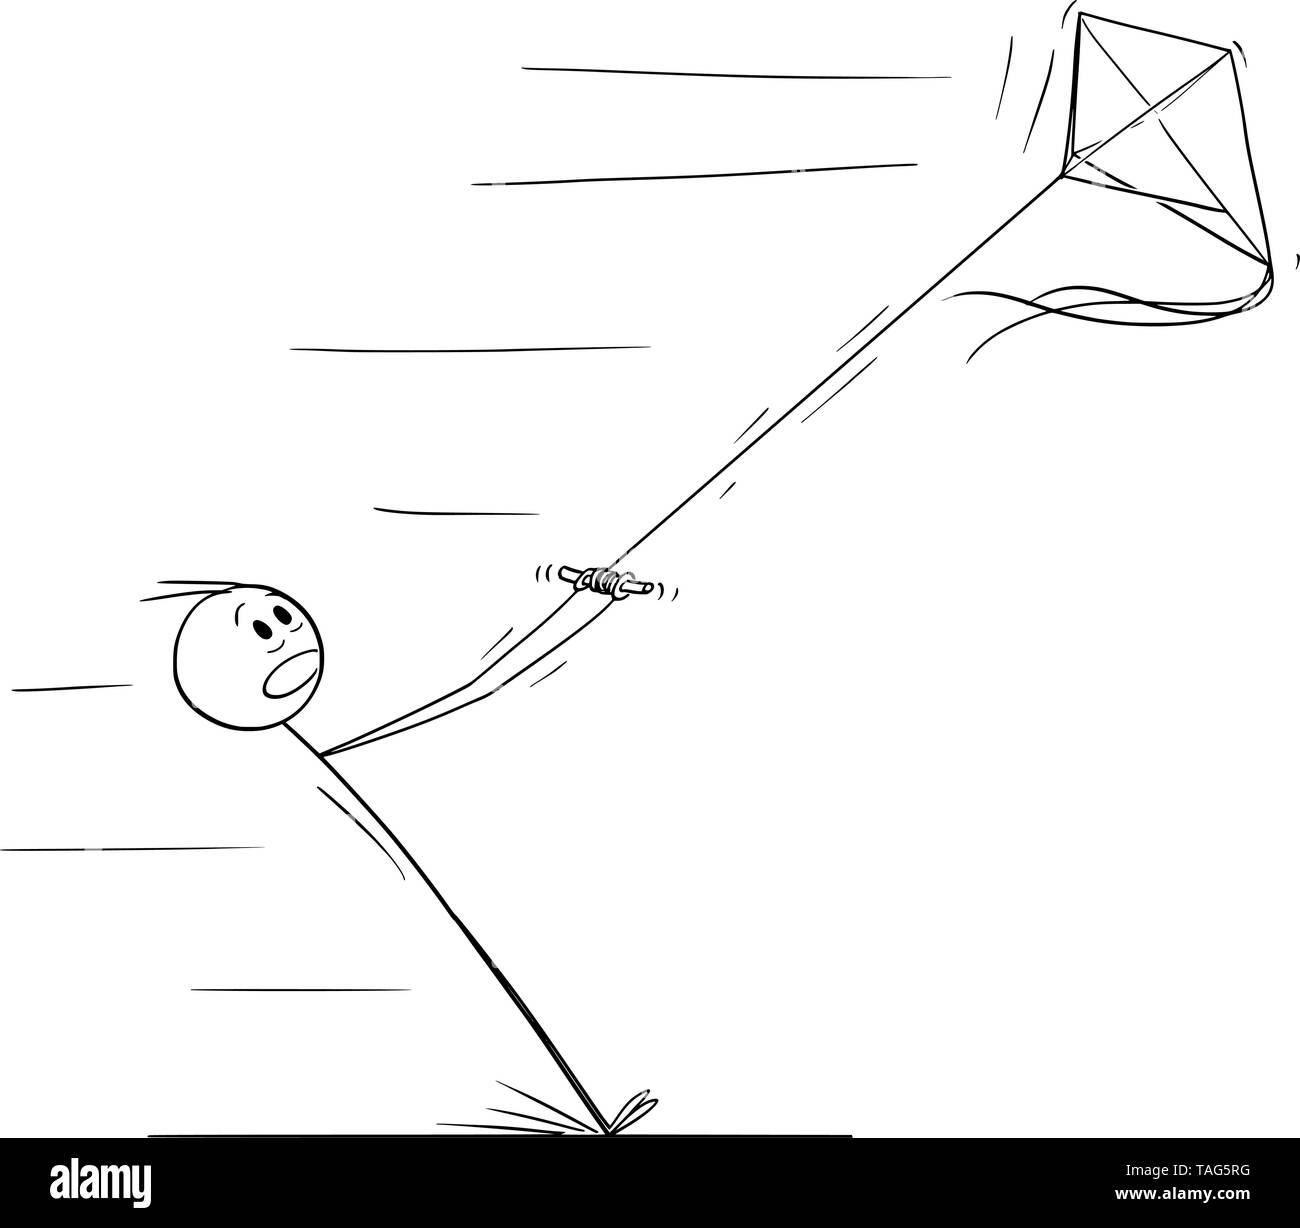 Cartoon vectores stick figura dibujo Ilustración conceptual del hombre volar cometa y tirar con viento fuerte. Ilustración del Vector